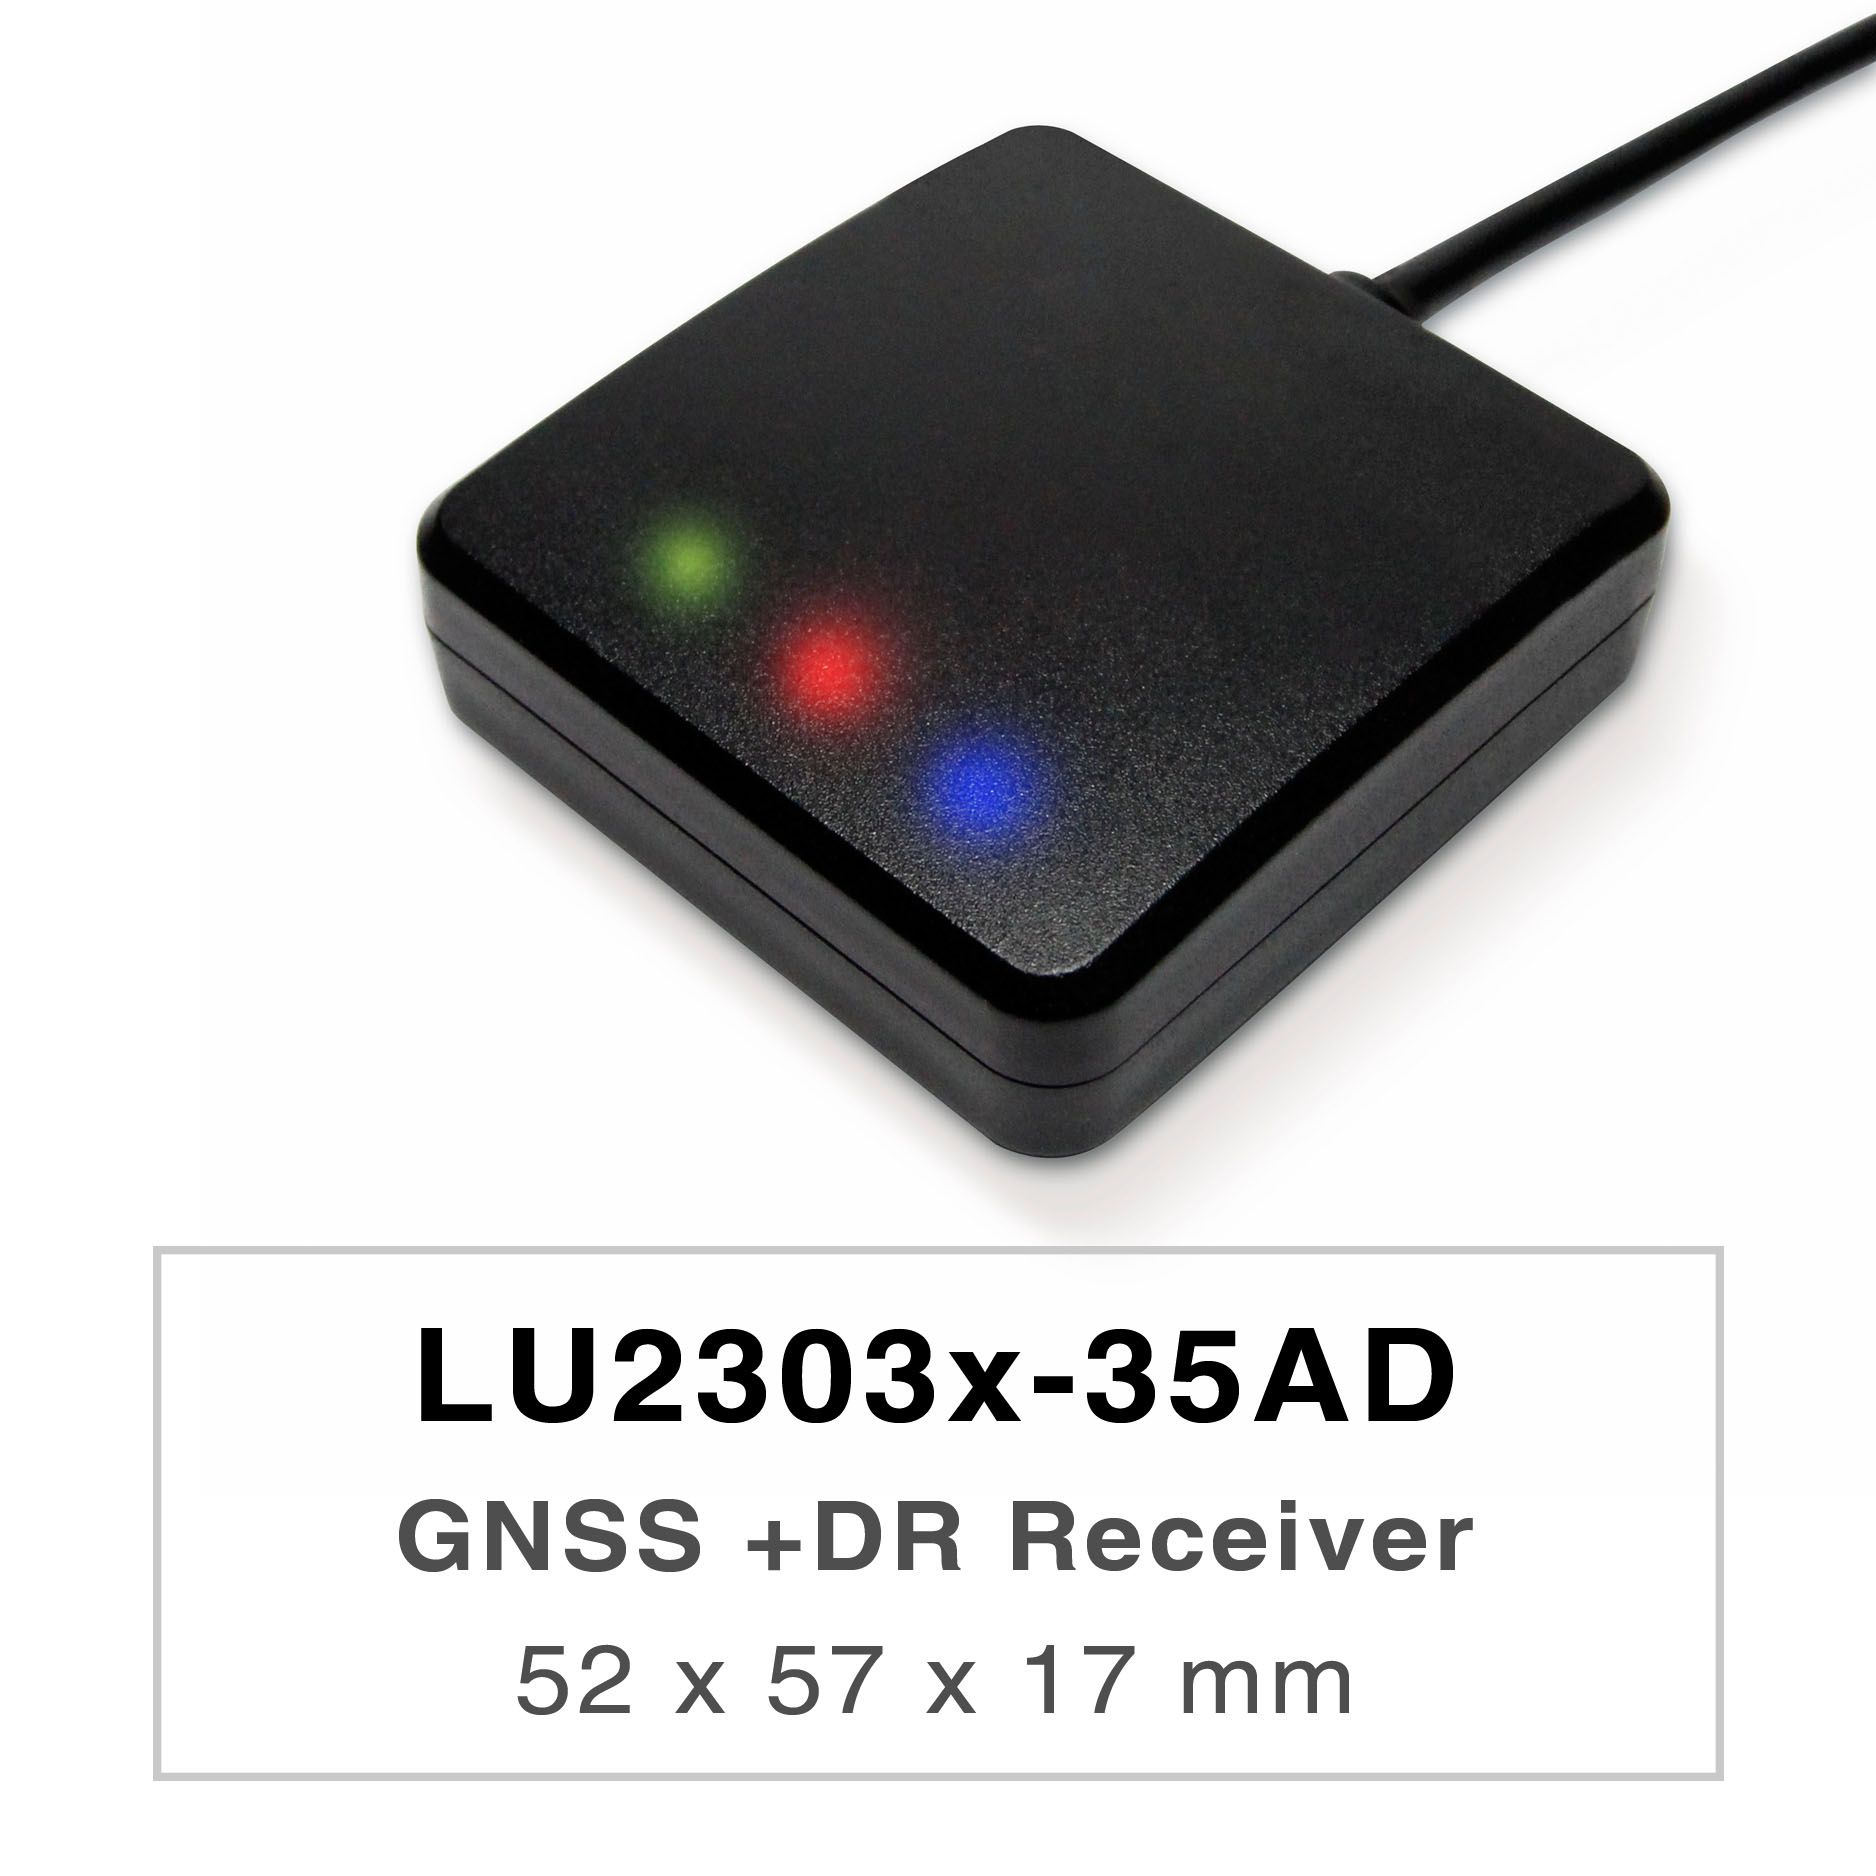 Die Produkte der Serie LU2303x-35AD sind hochleistungsfähige Dual-Band-GNSS-UDR (Untethered Dead Reckoning)-Empfänger (auch bekannt als GNSS-Maus), die in der Lage sind, alle globalen zivilen Navigationssysteme (GPS, GLONASS, BDS, GALILEO, QZSS) zu verfolgen. Die GNSS-Maus empfängt gleichzeitig sowohl L1- als auch L5-Signale und bietet eine bessere Positionsgenauigkeit.